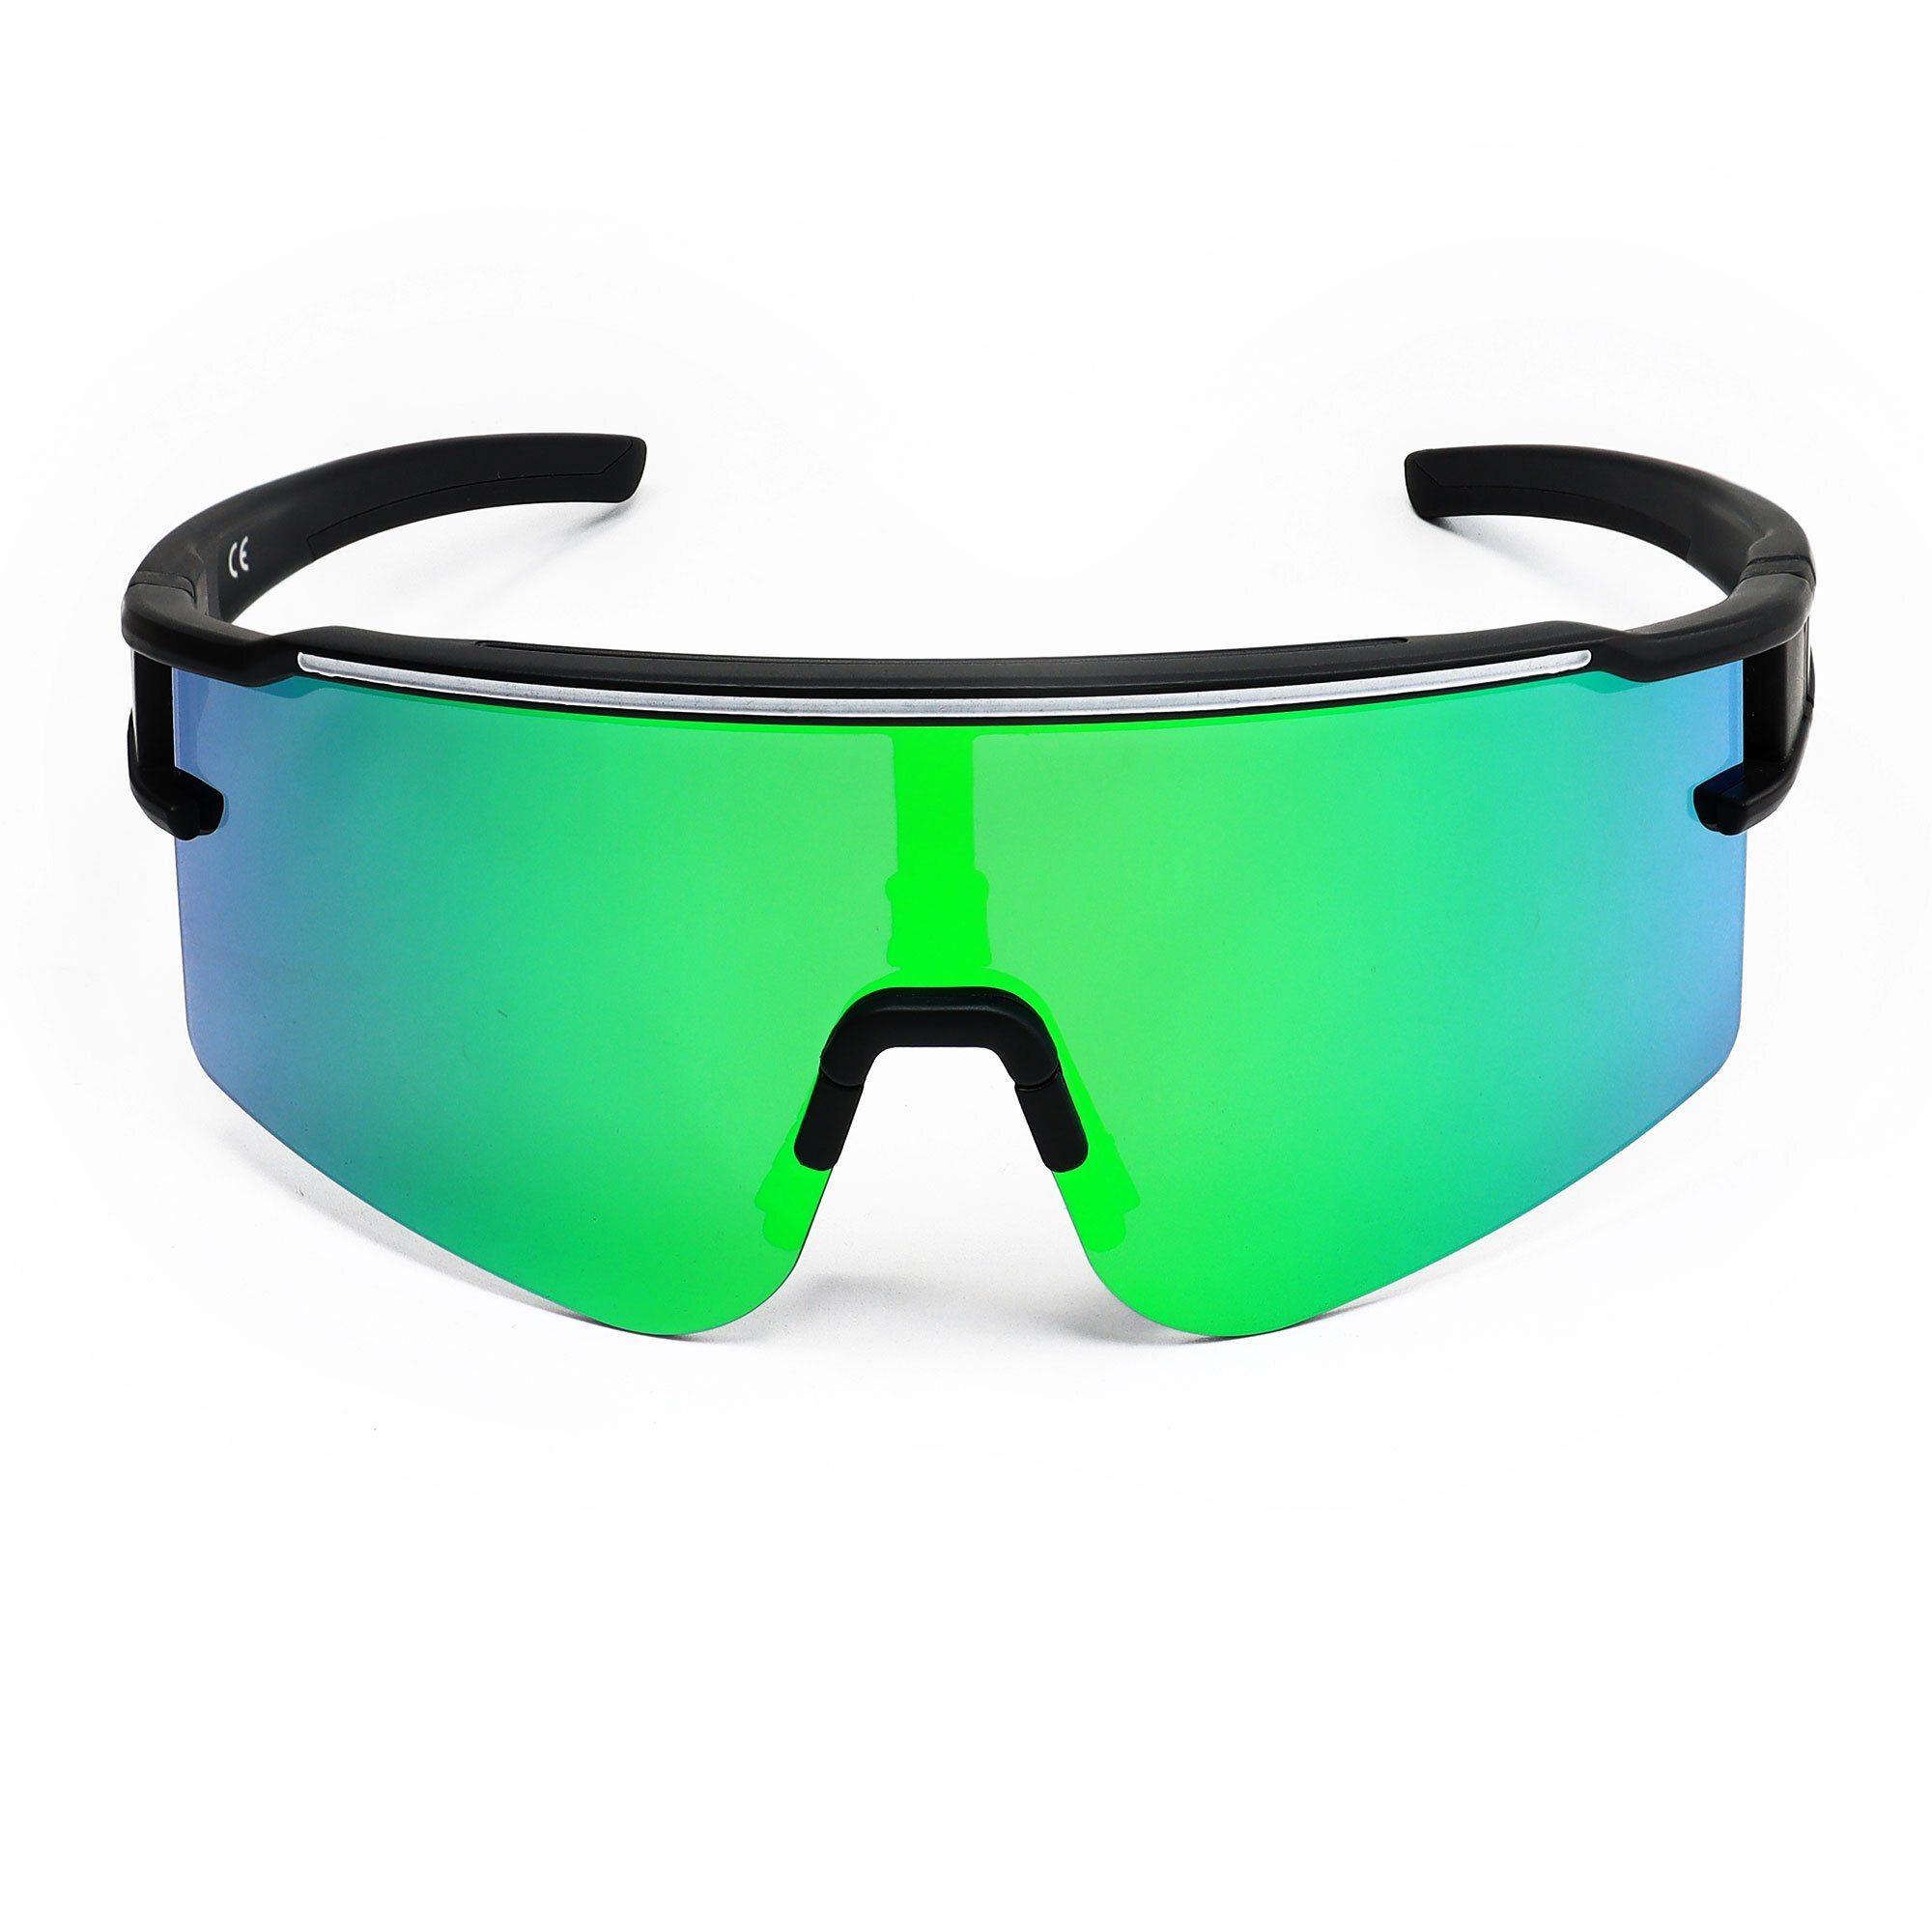 YEAZ Sportbrille SUNTHRILL SET Glaswechselsystem mit magnetischem sport-sonnenbrille grün weiß/blau, schwarz Sport-Sonnenbrille 